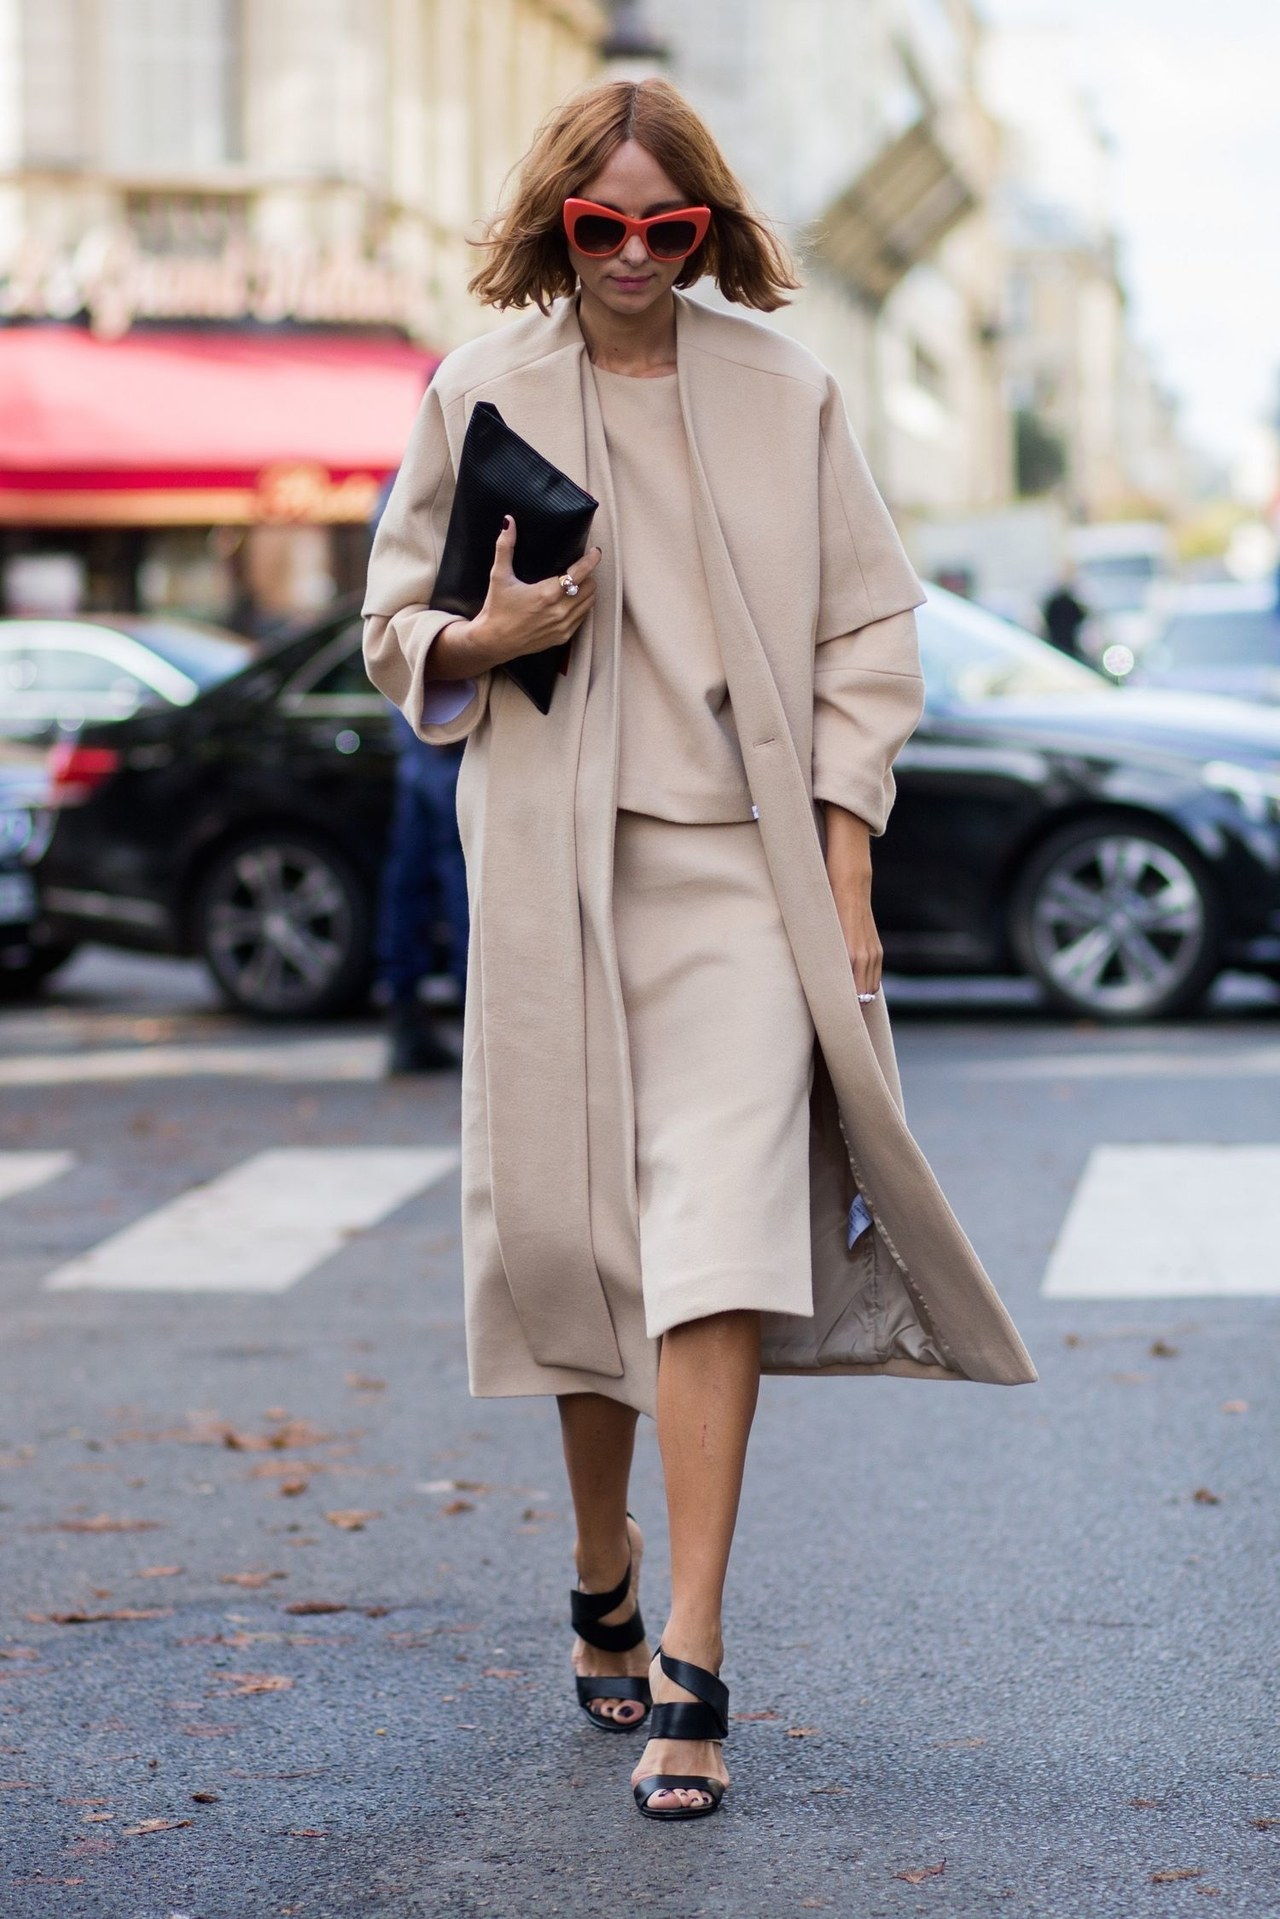 冷 weather winter interview outfit camel skirt coat